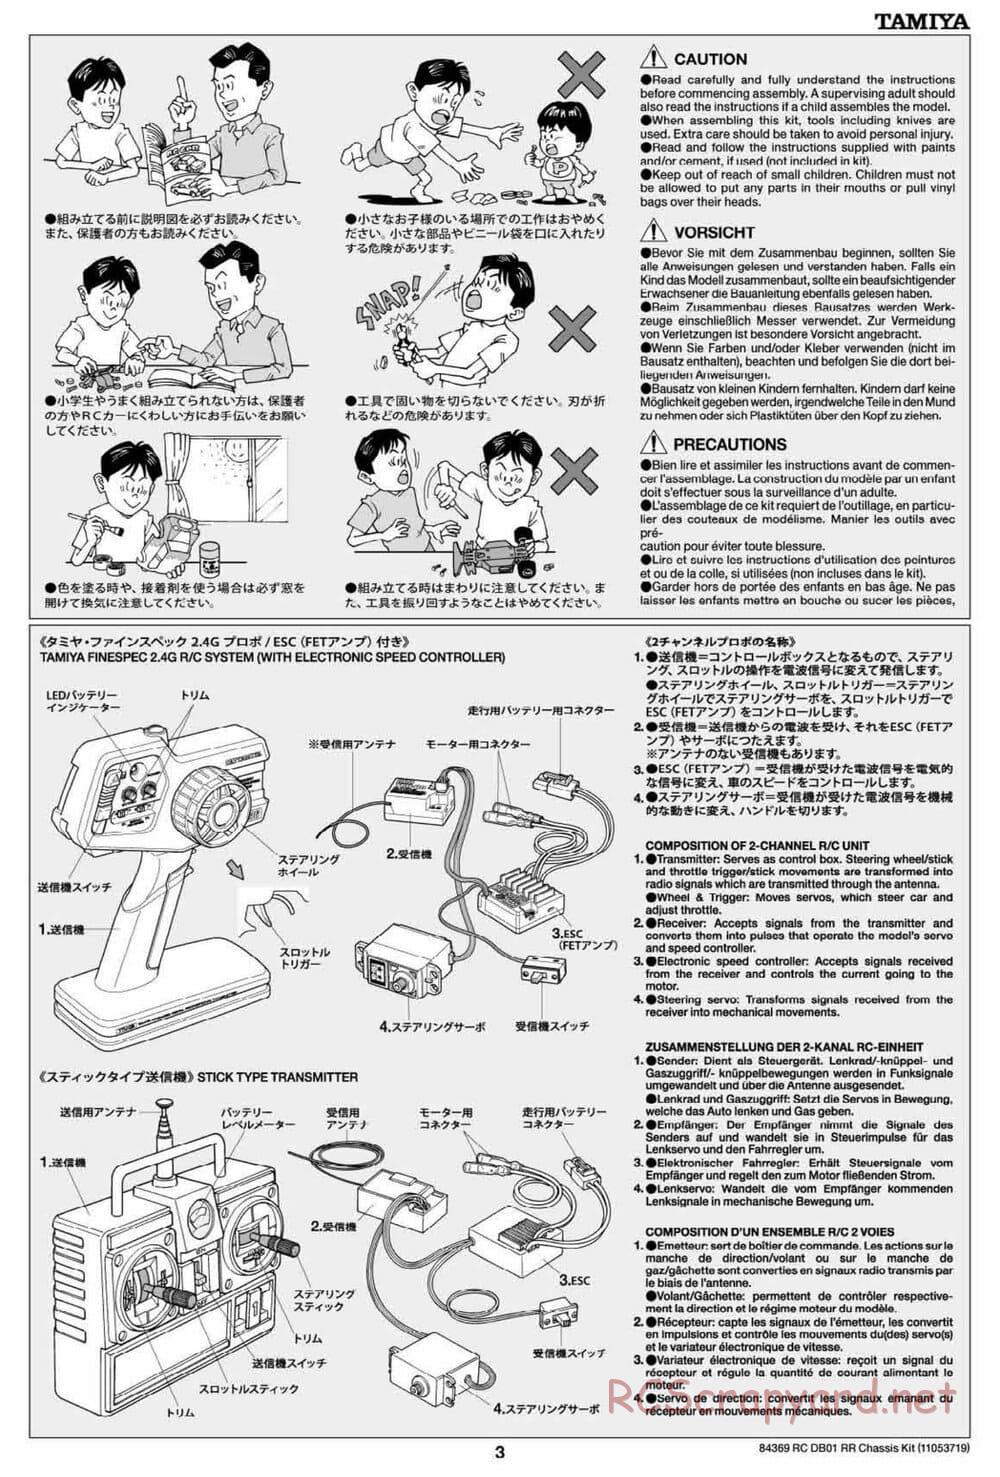 Tamiya - DB-01 RR Chassis - Manual - Page 3